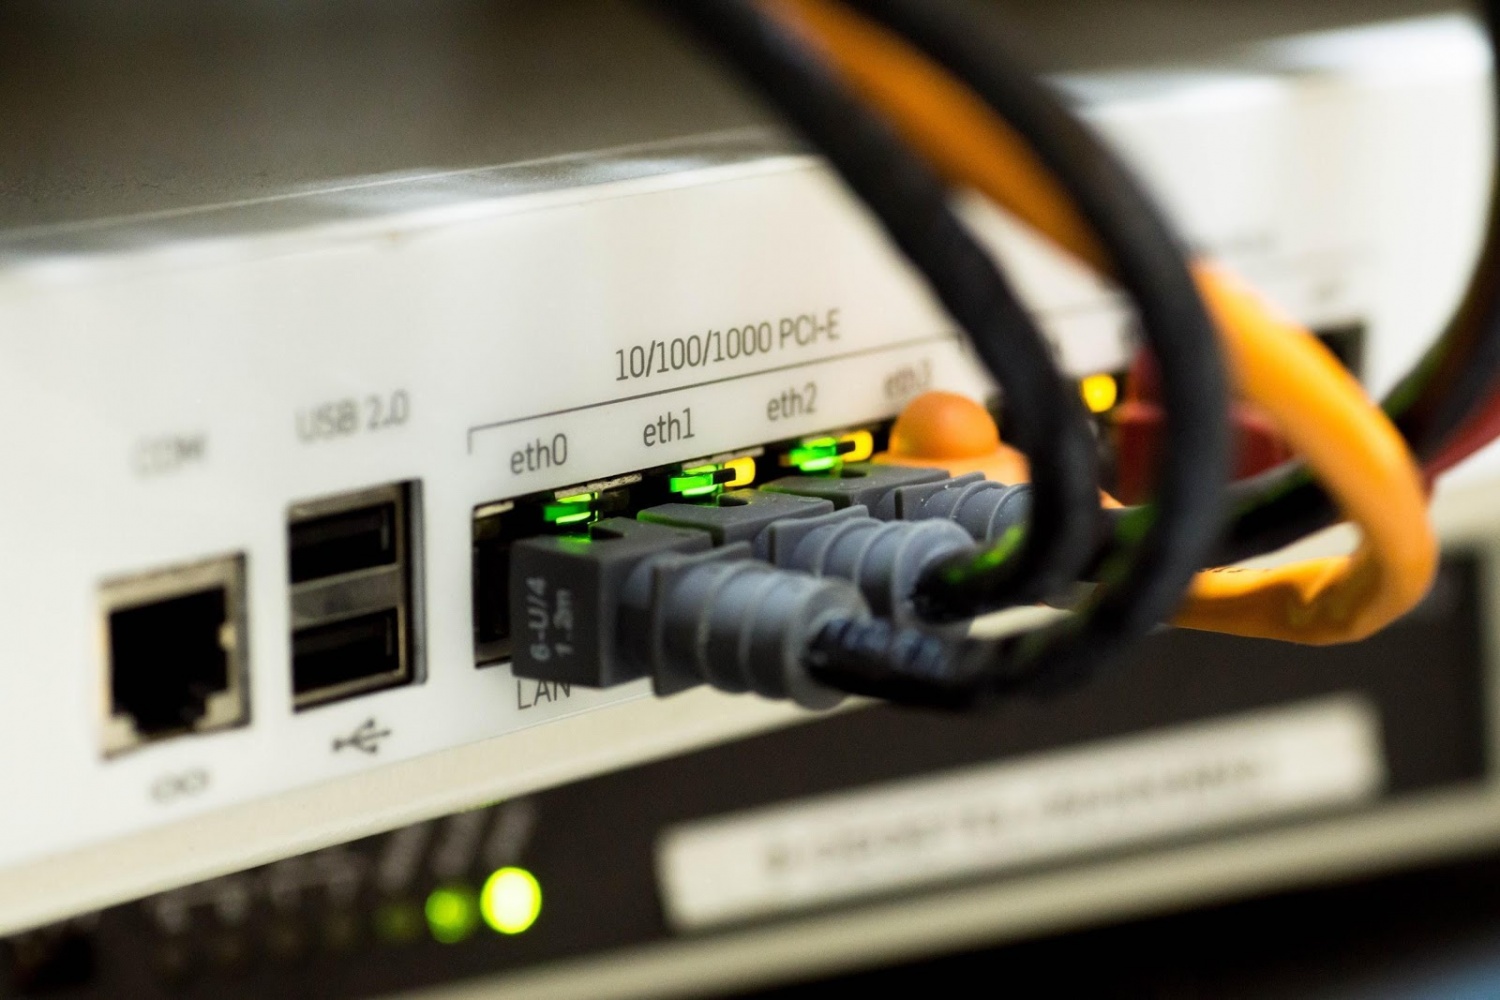 Does VPN affect internet speed?